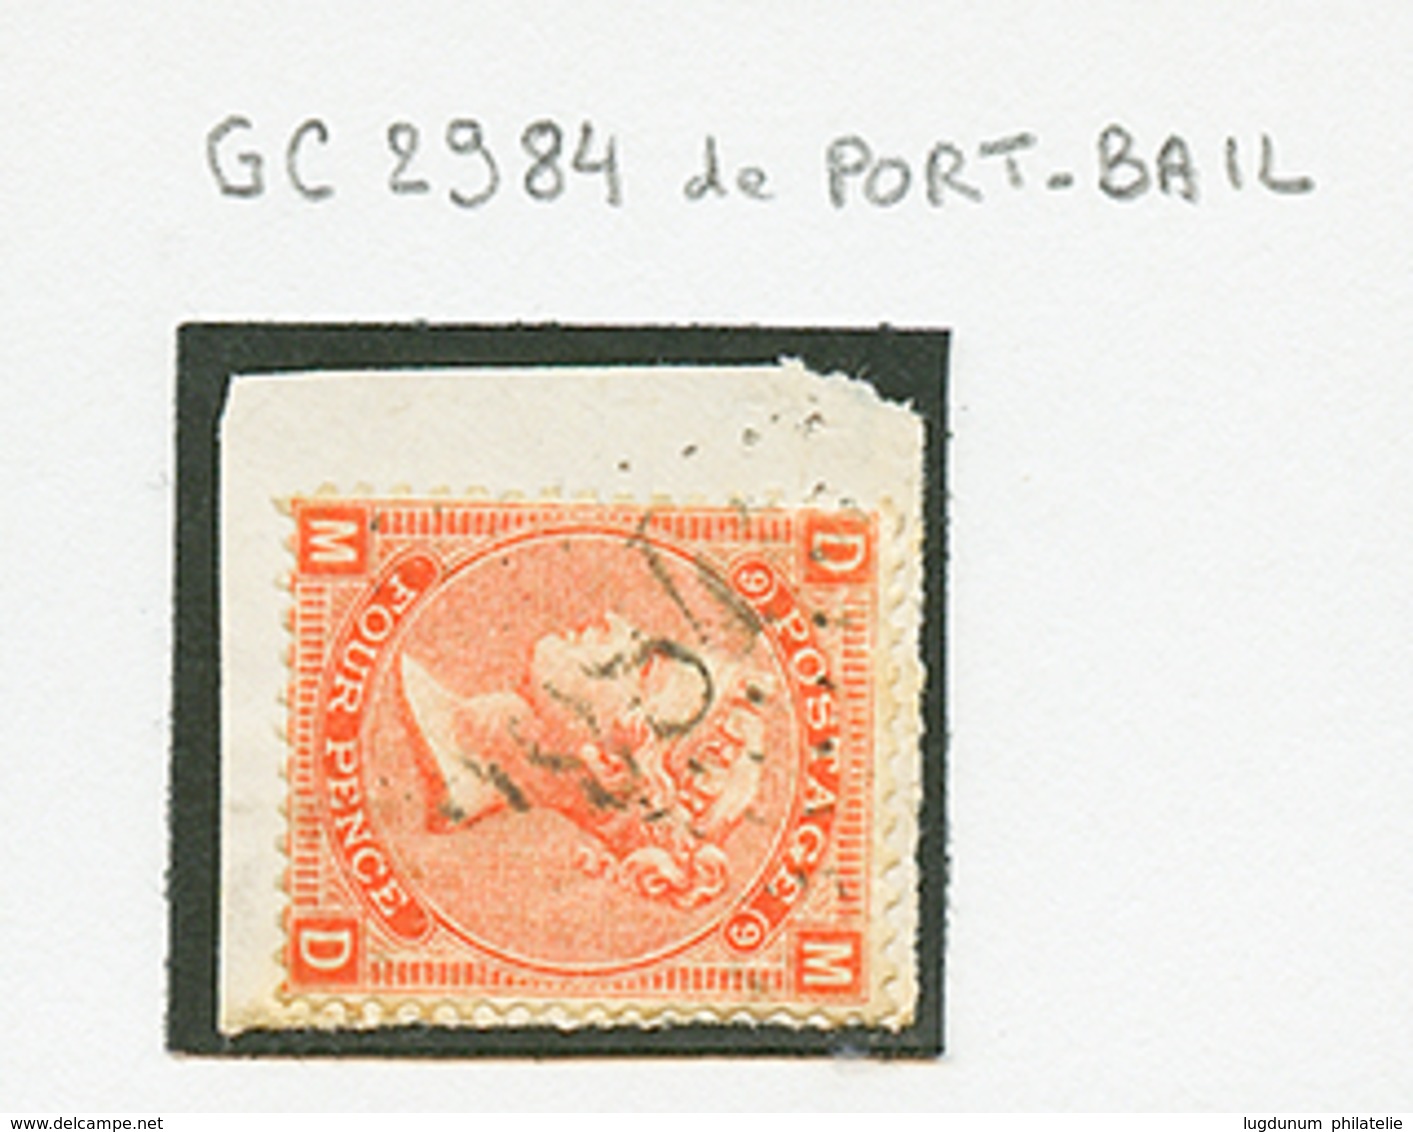 167 Timbre ANGLAIS 4p Obl. GC 2984 De PORT BAIL Sur Fragment. RARETE. B/TB. - Guernsey